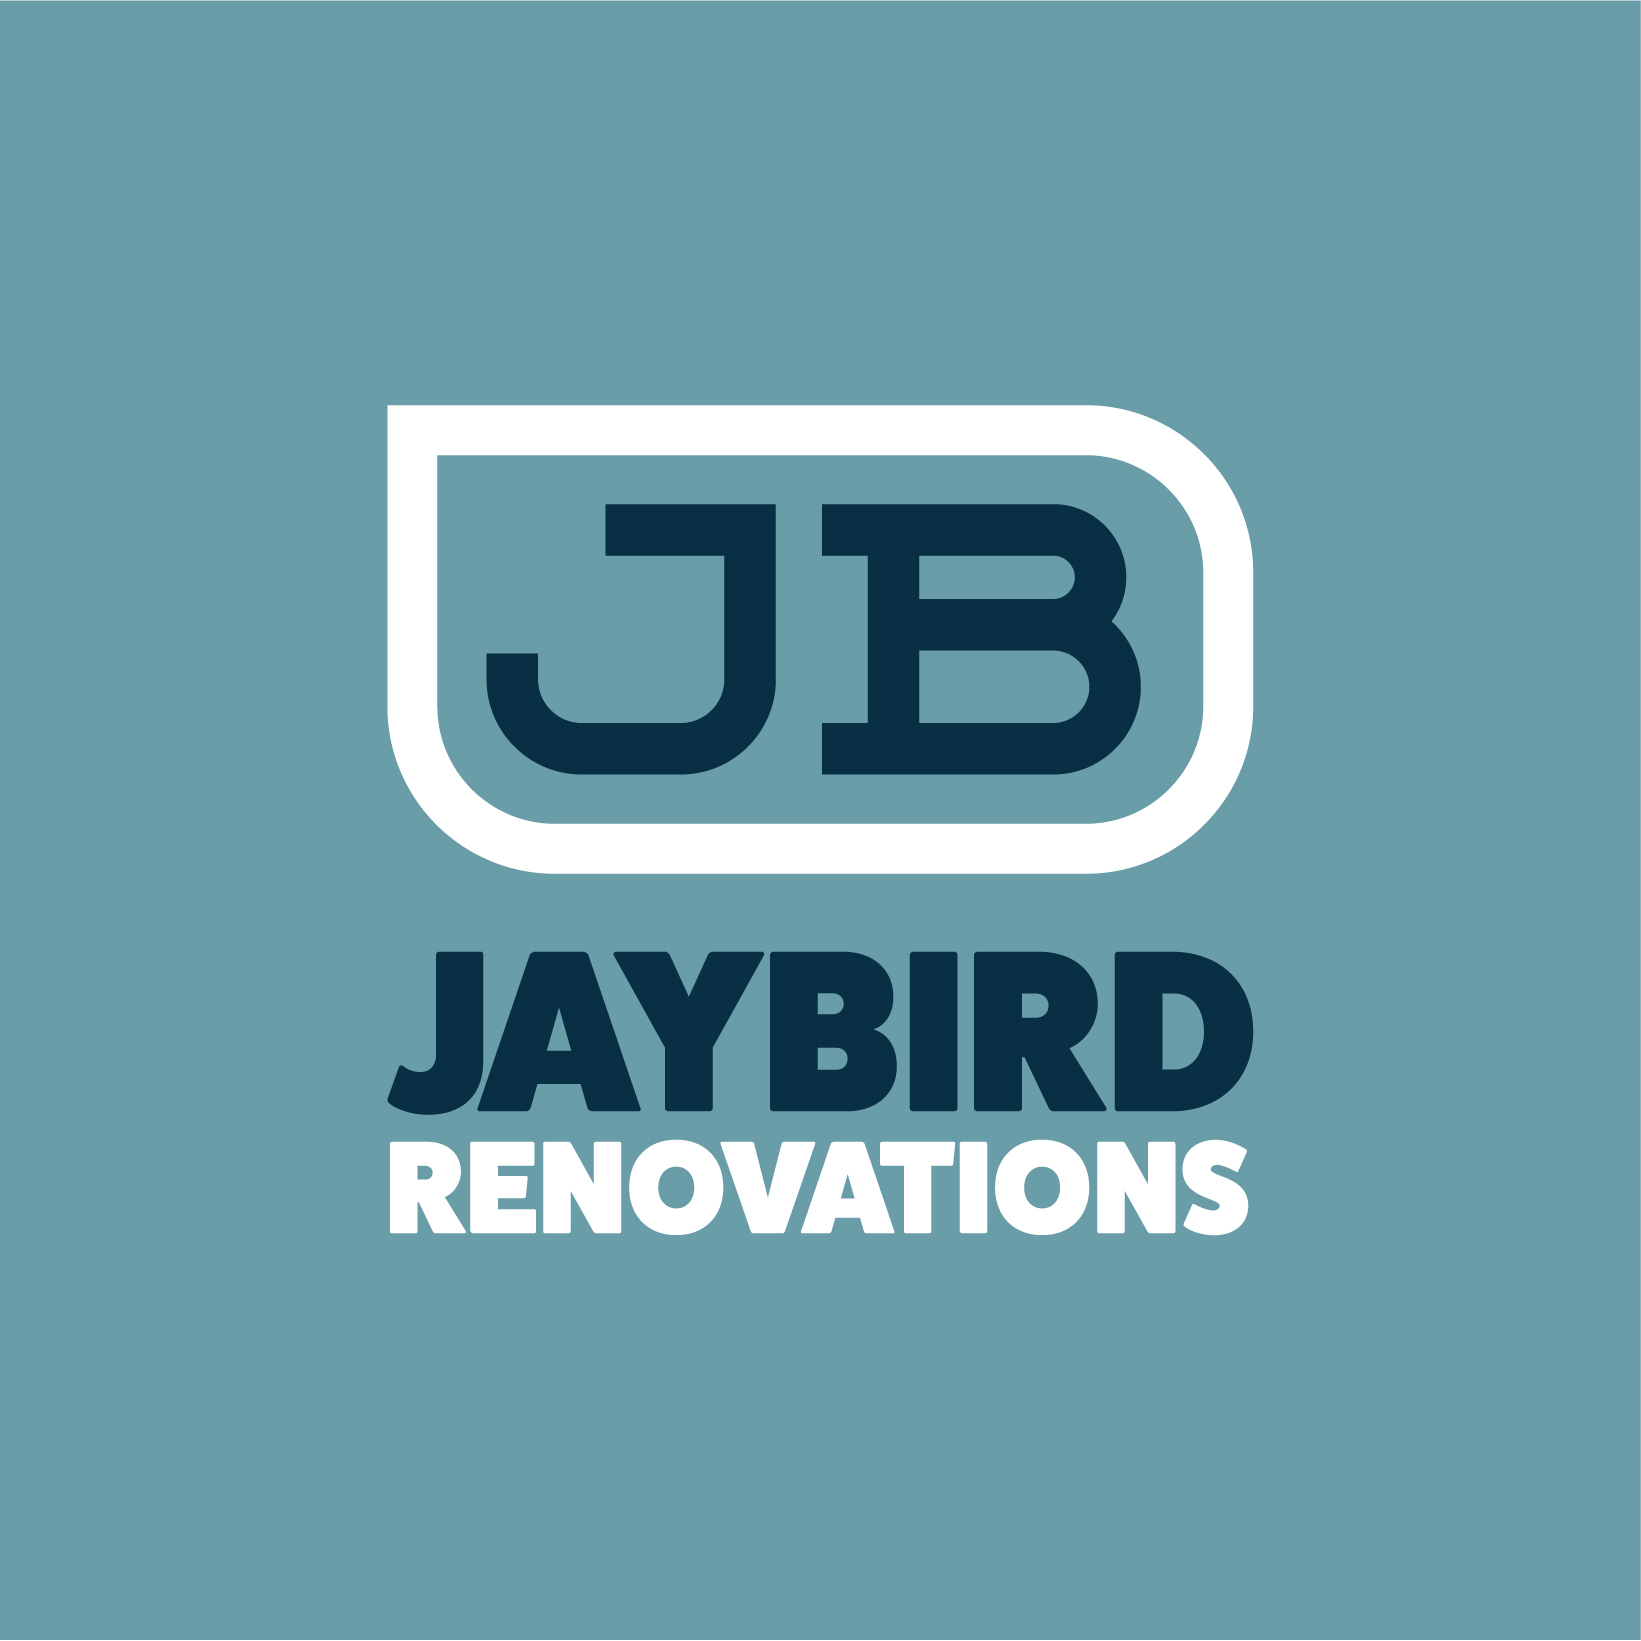 Jaybird Renovations